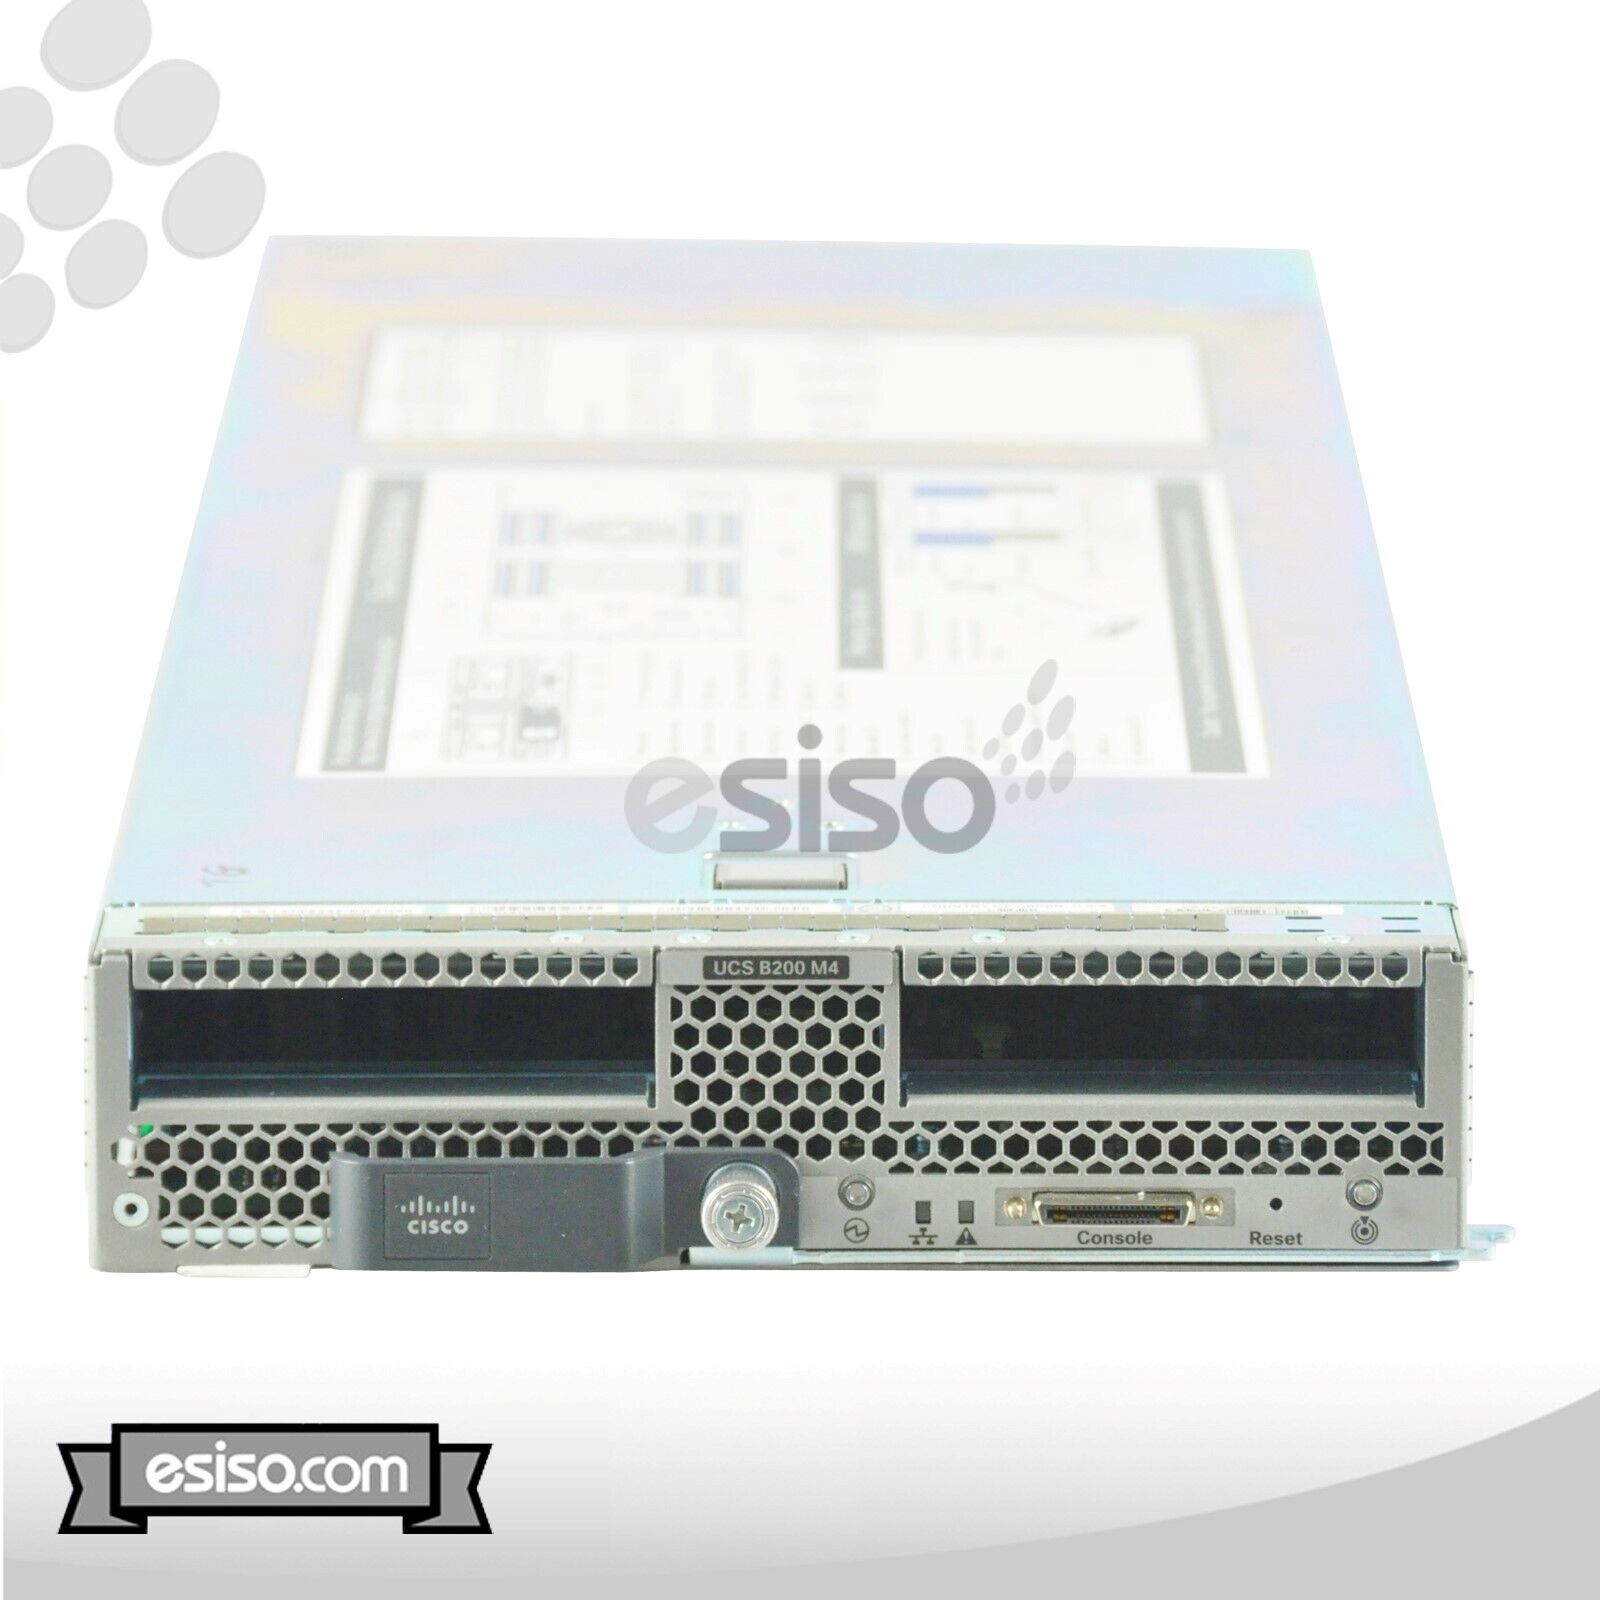 CISCO UCS B200 M4 BLADE 2x 14 CORE E5-2660v4 3.2GHz 128GB RAM NO HDD